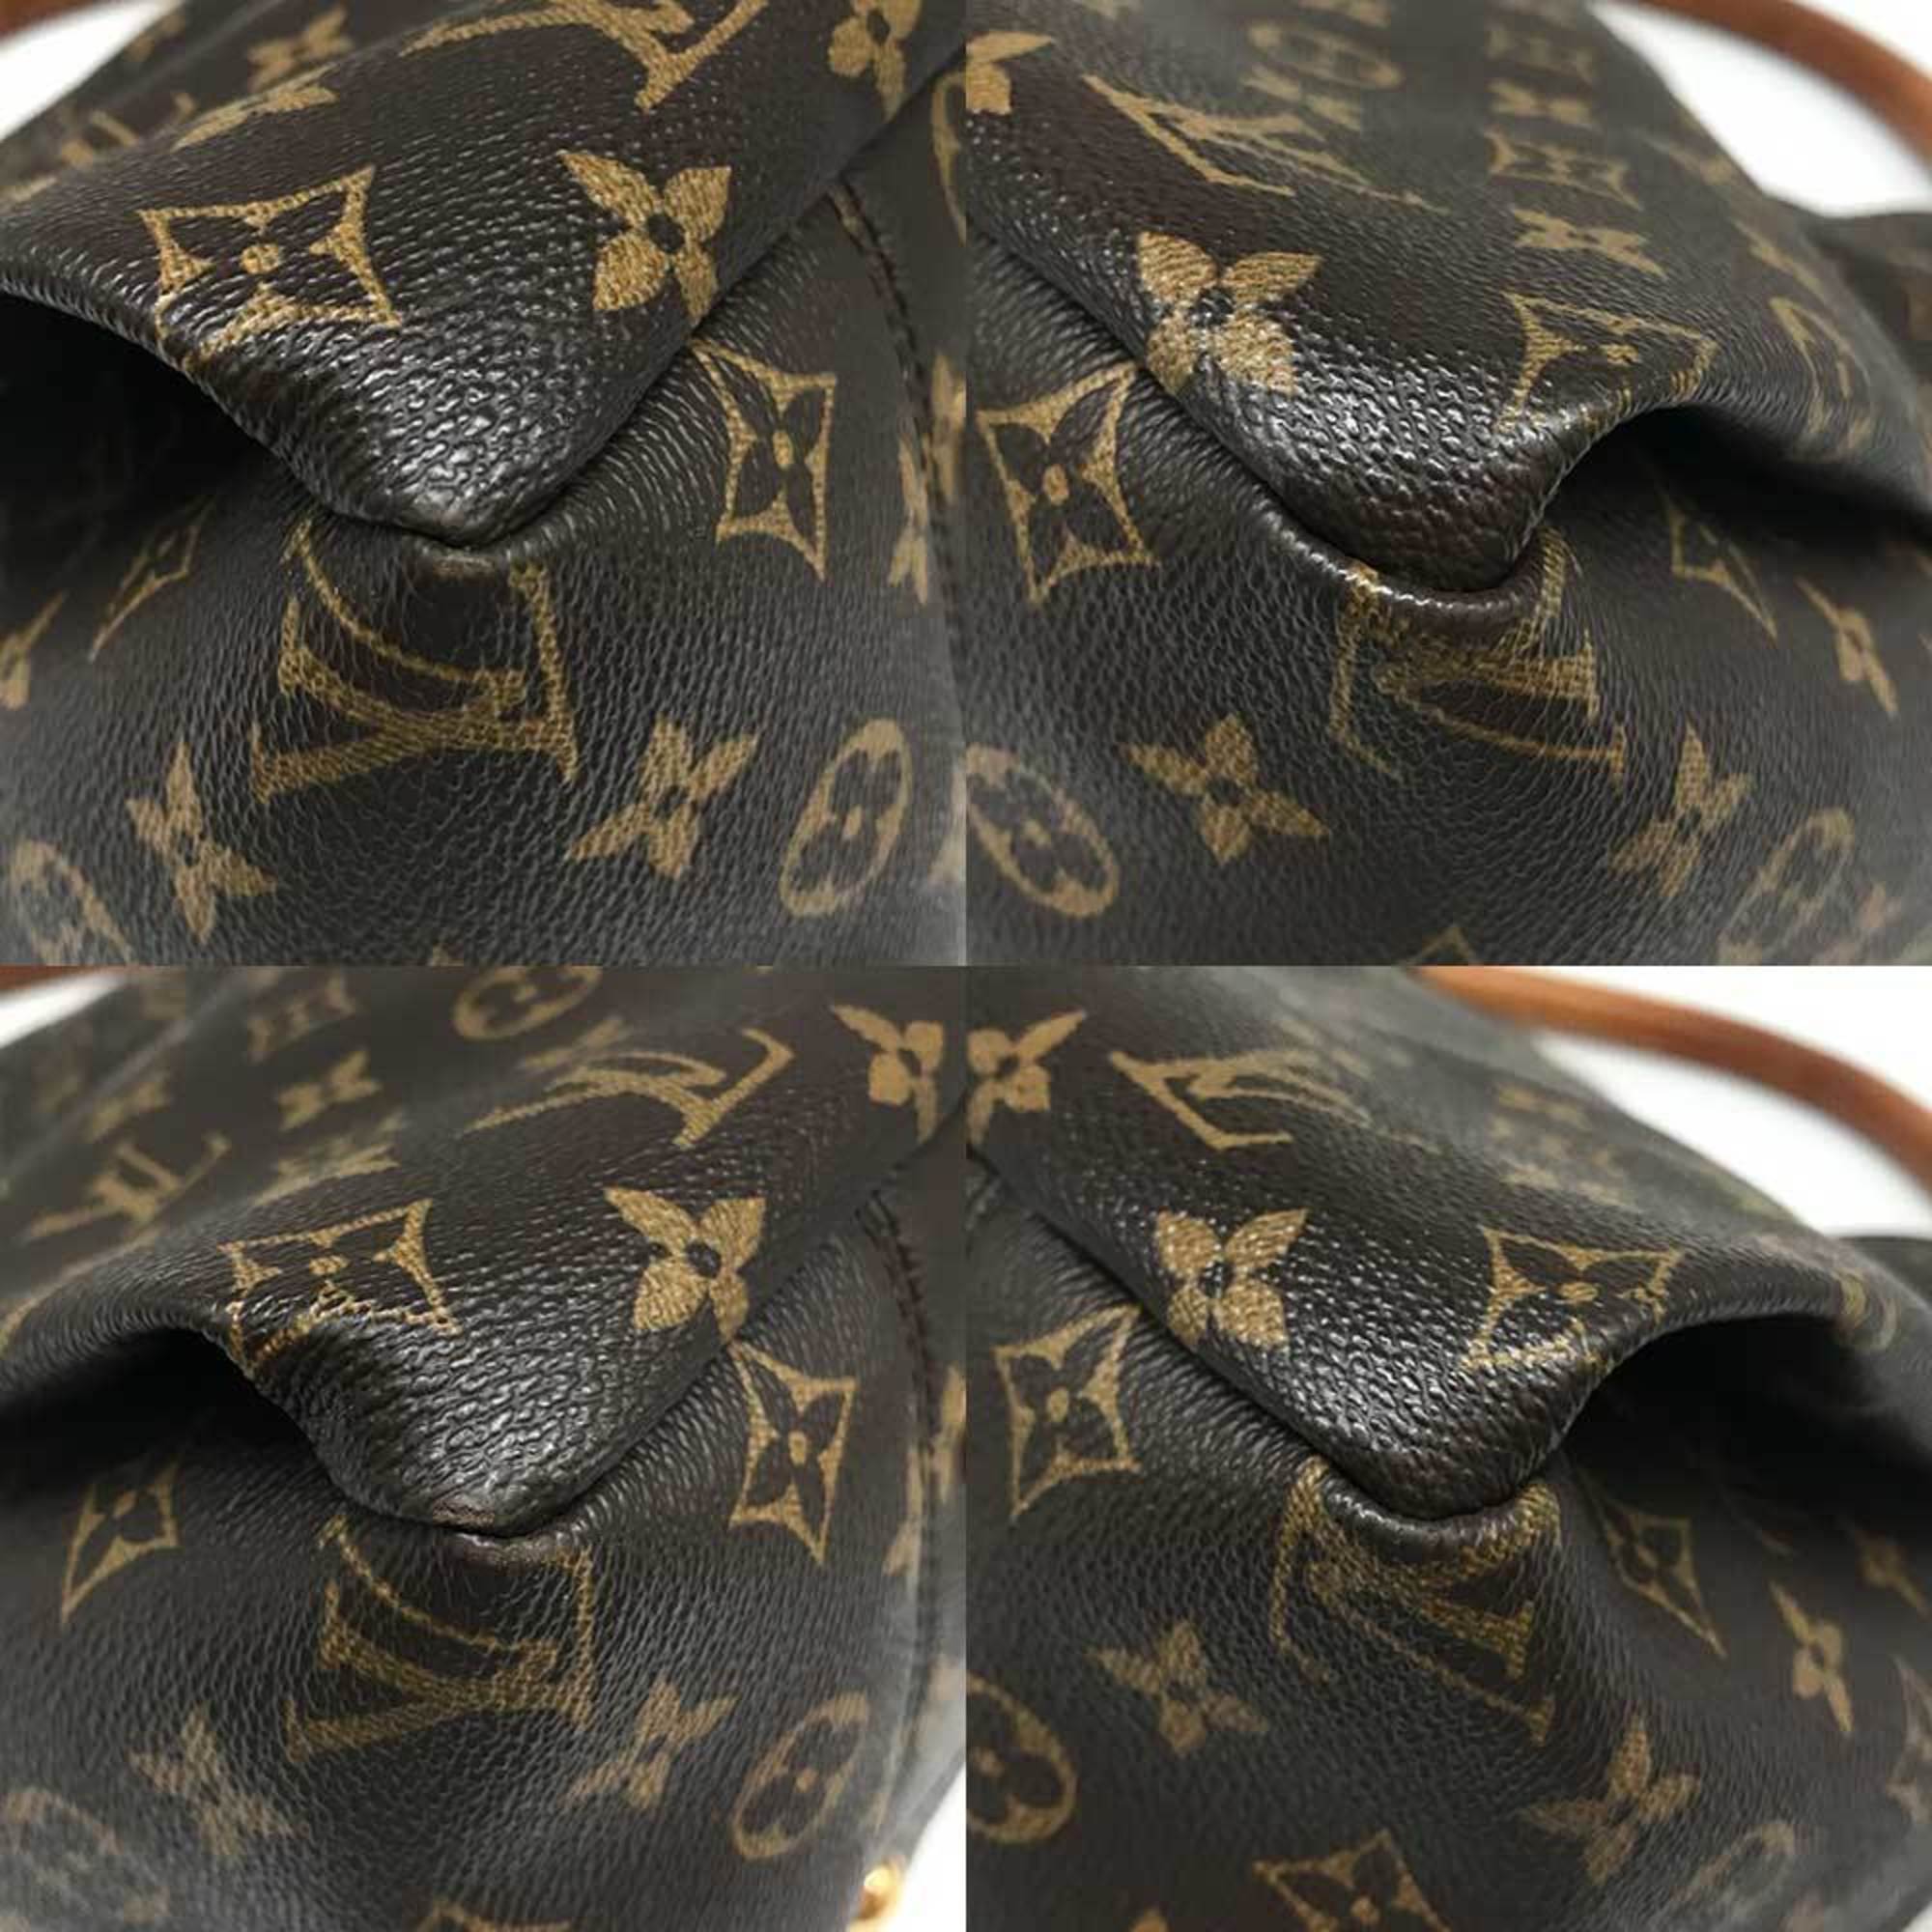 Louis Vuitton Artsy MM Monogram Shoulder Bag M40249 LOUISVUITTON